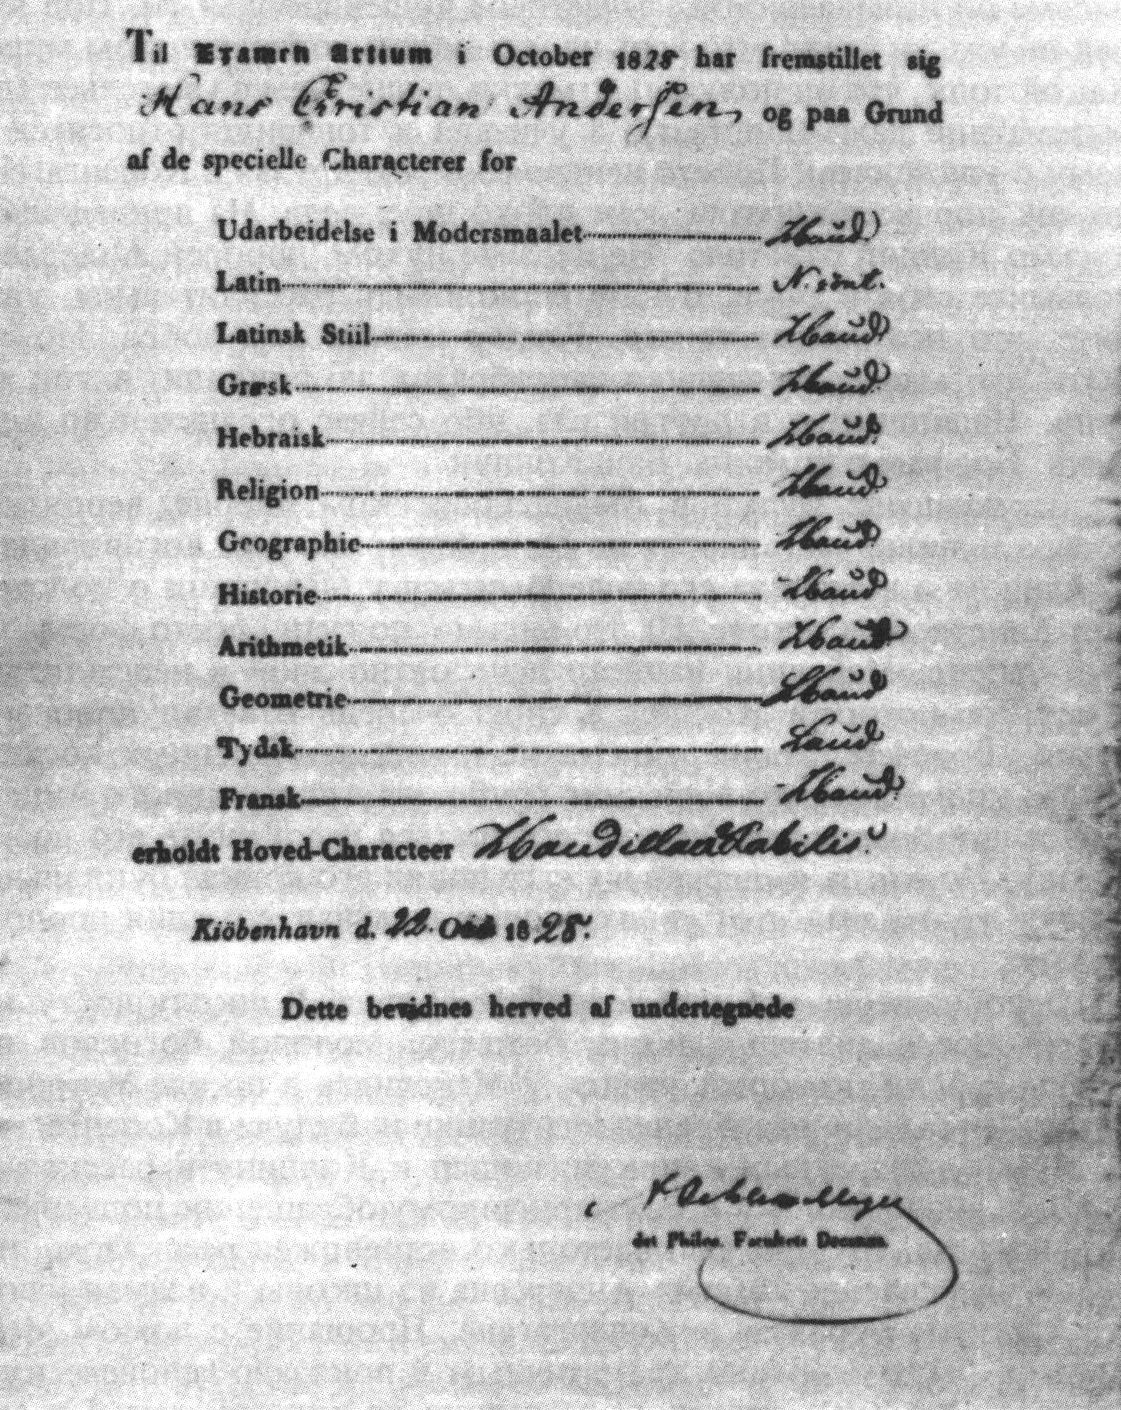 Аттестат Андерсена только с отличными оценками, выданный 28 октября 1828 года